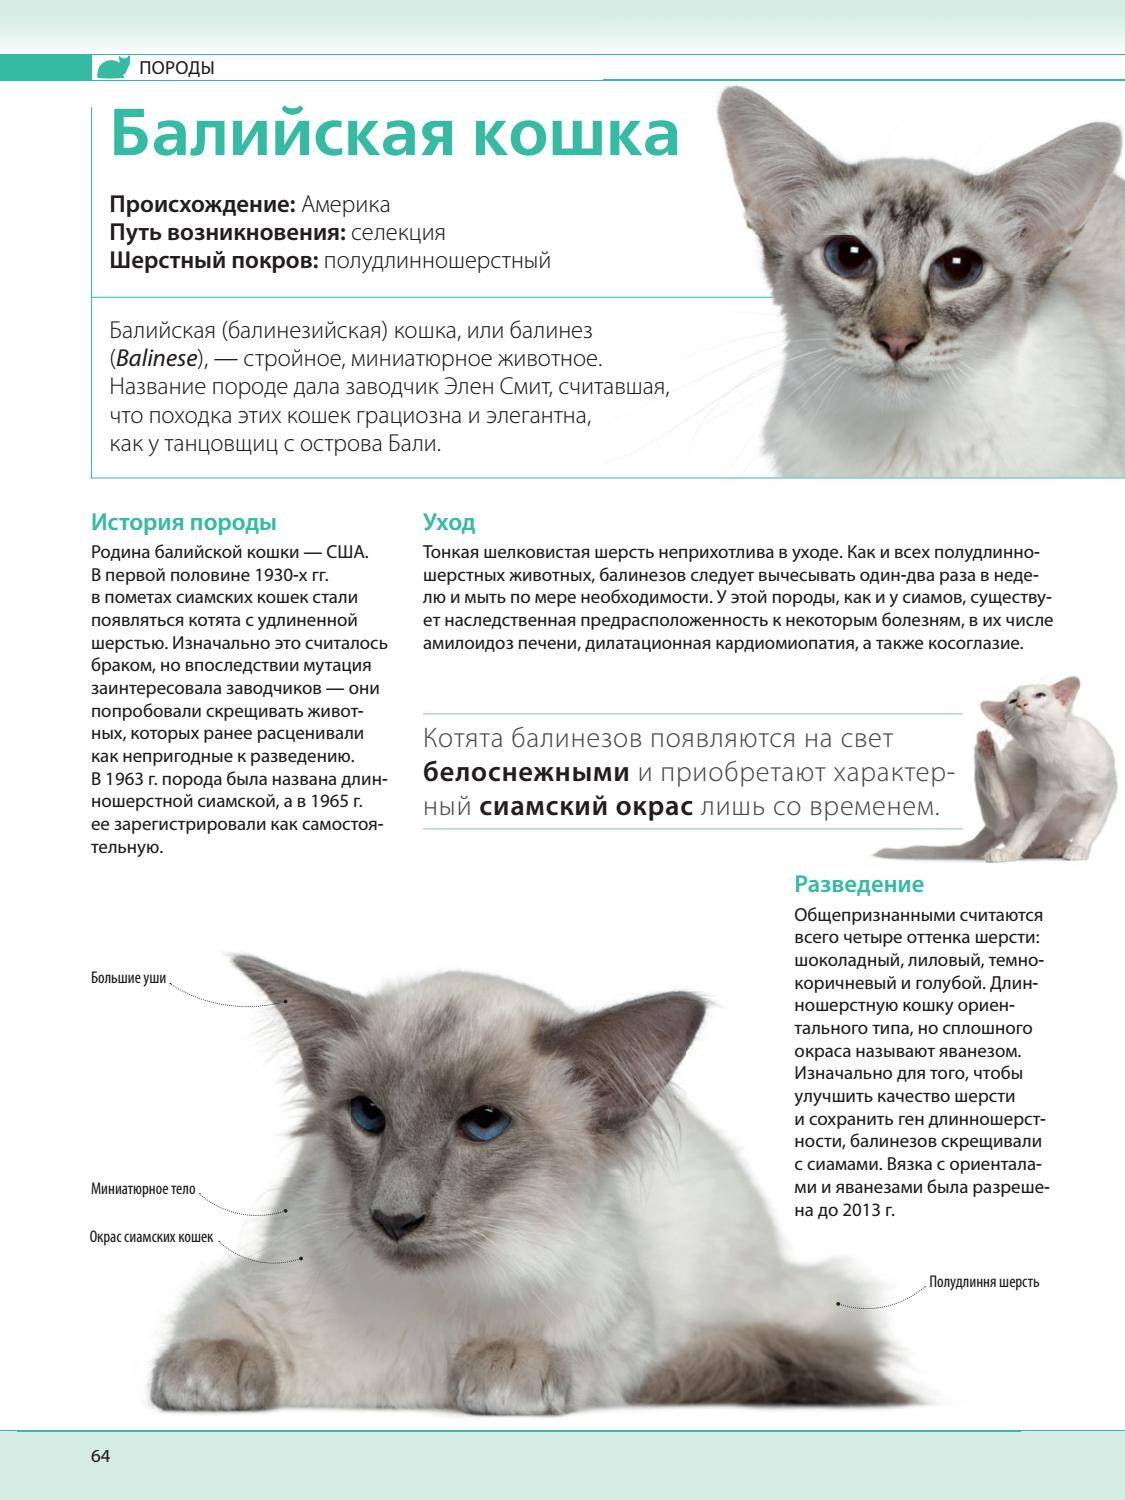 Мэнкс (мэнская кошка): описание породы и характера, фото